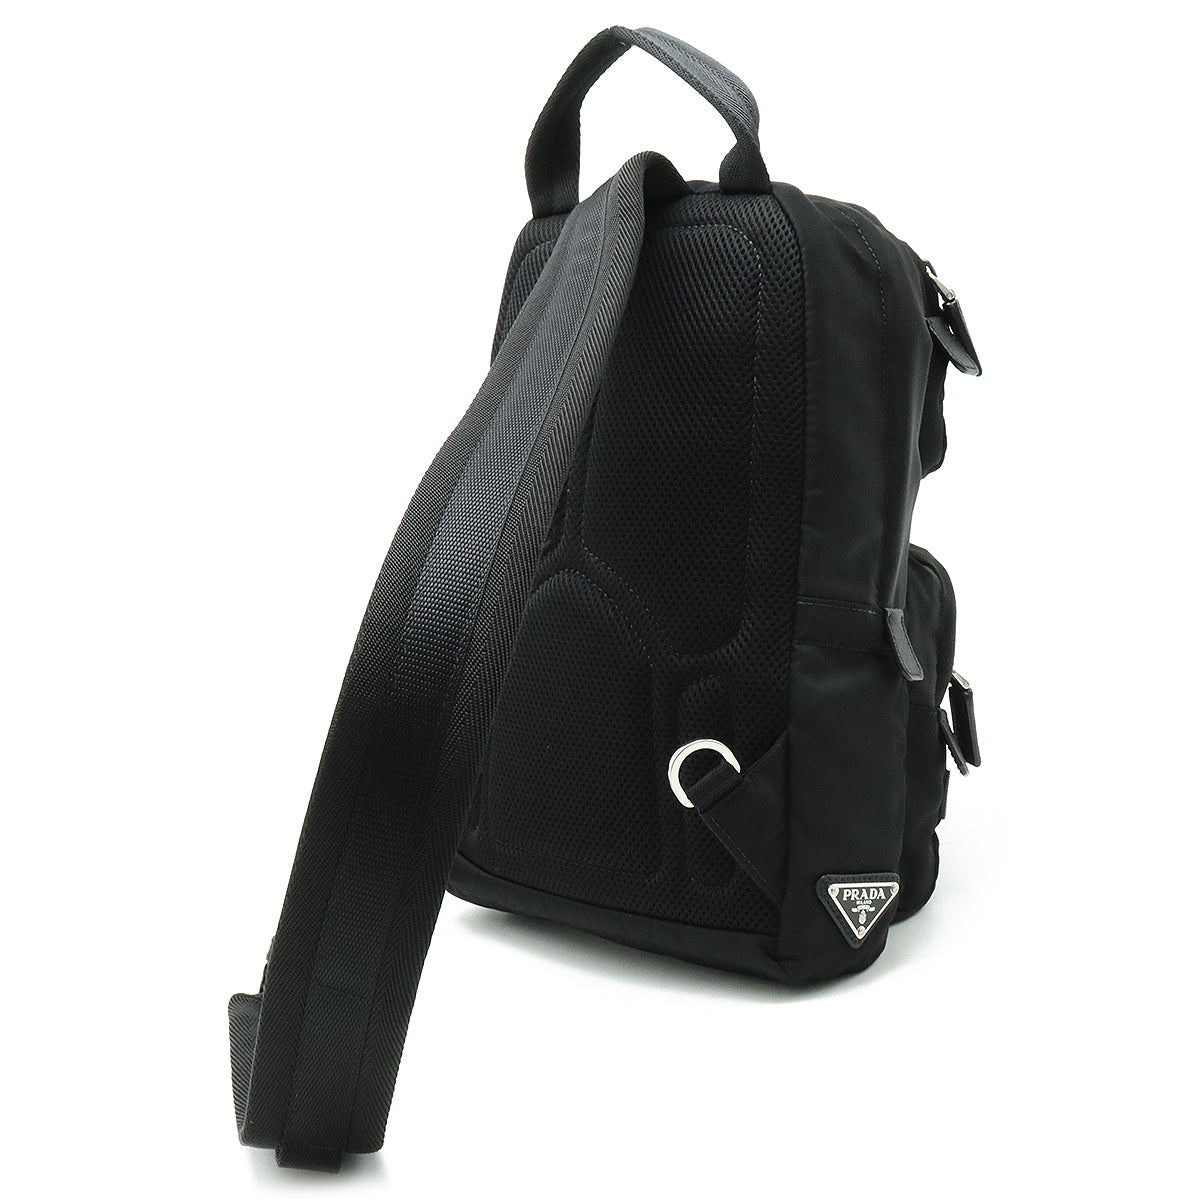 PRADA Prada TESSUTO Body Bag Shoulder Bag Sliding Nylon Leather NERO Black Black Silver Gold  Men 2VZ013